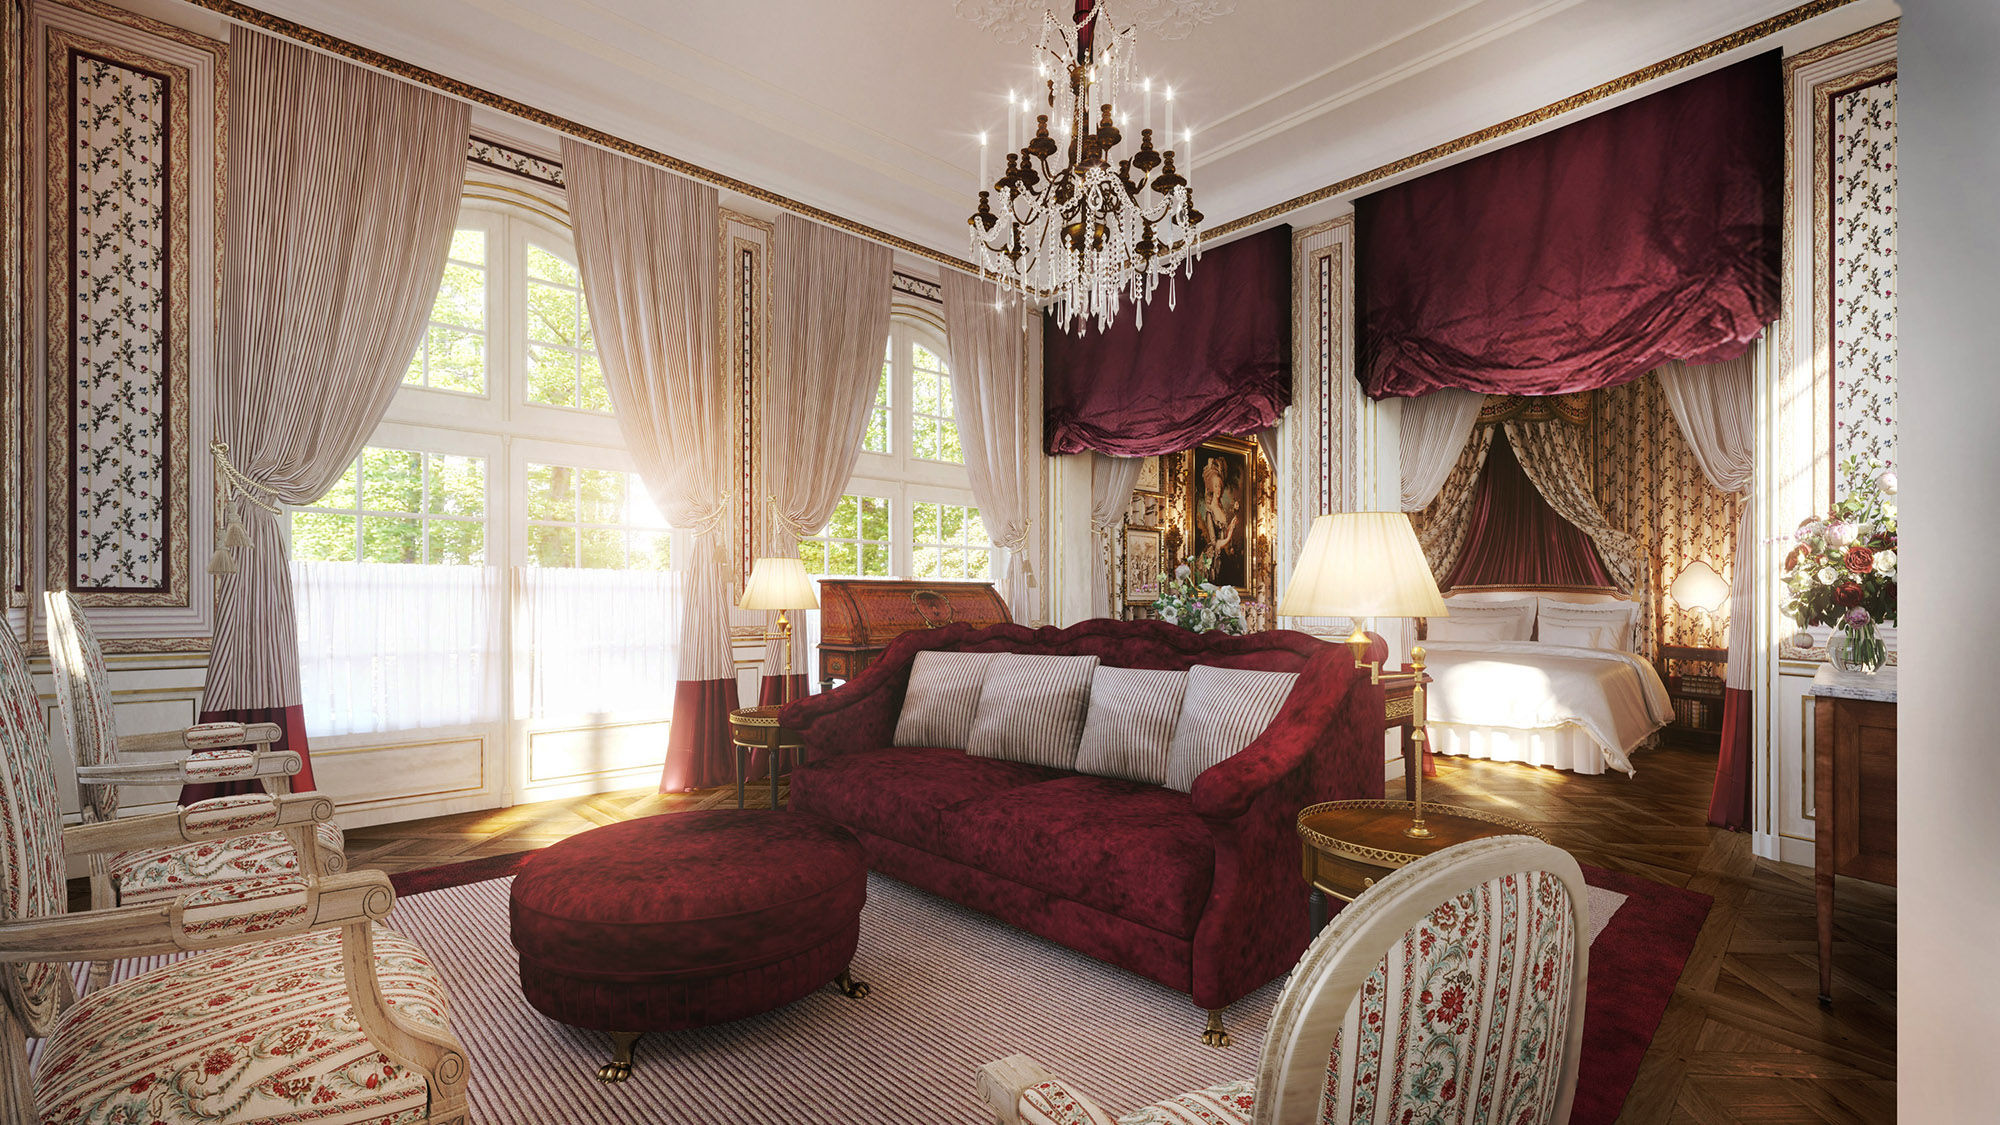 A guestroom at Chateau Louise de La Valliere.